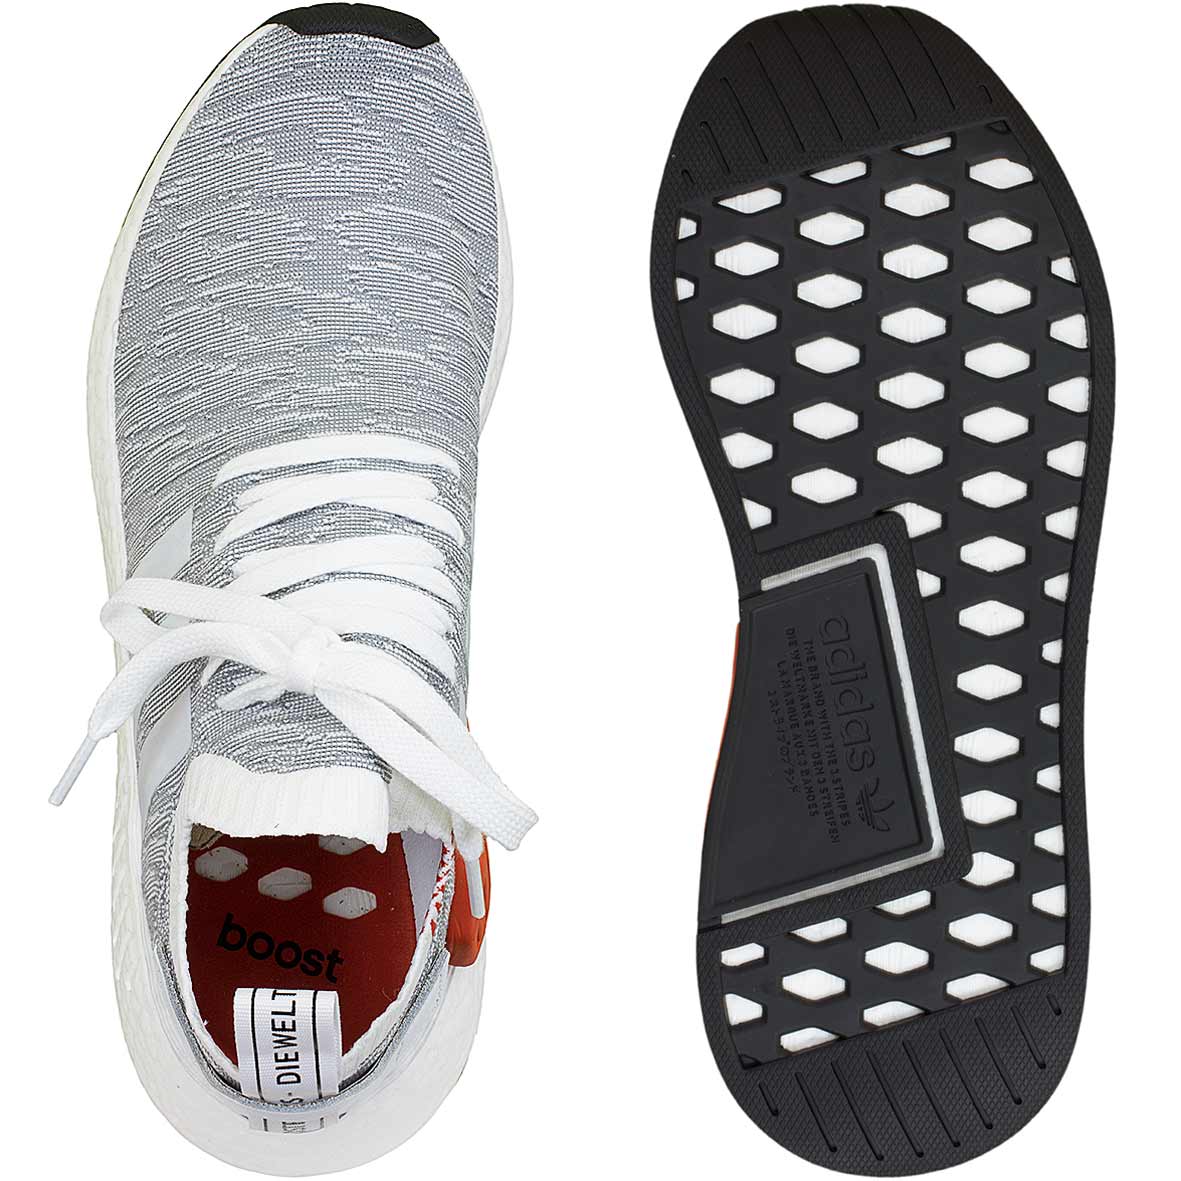 ☆ Adidas Originals Sneaker NMD R2 Primeknit weiß/schwarz - hier bestellen!